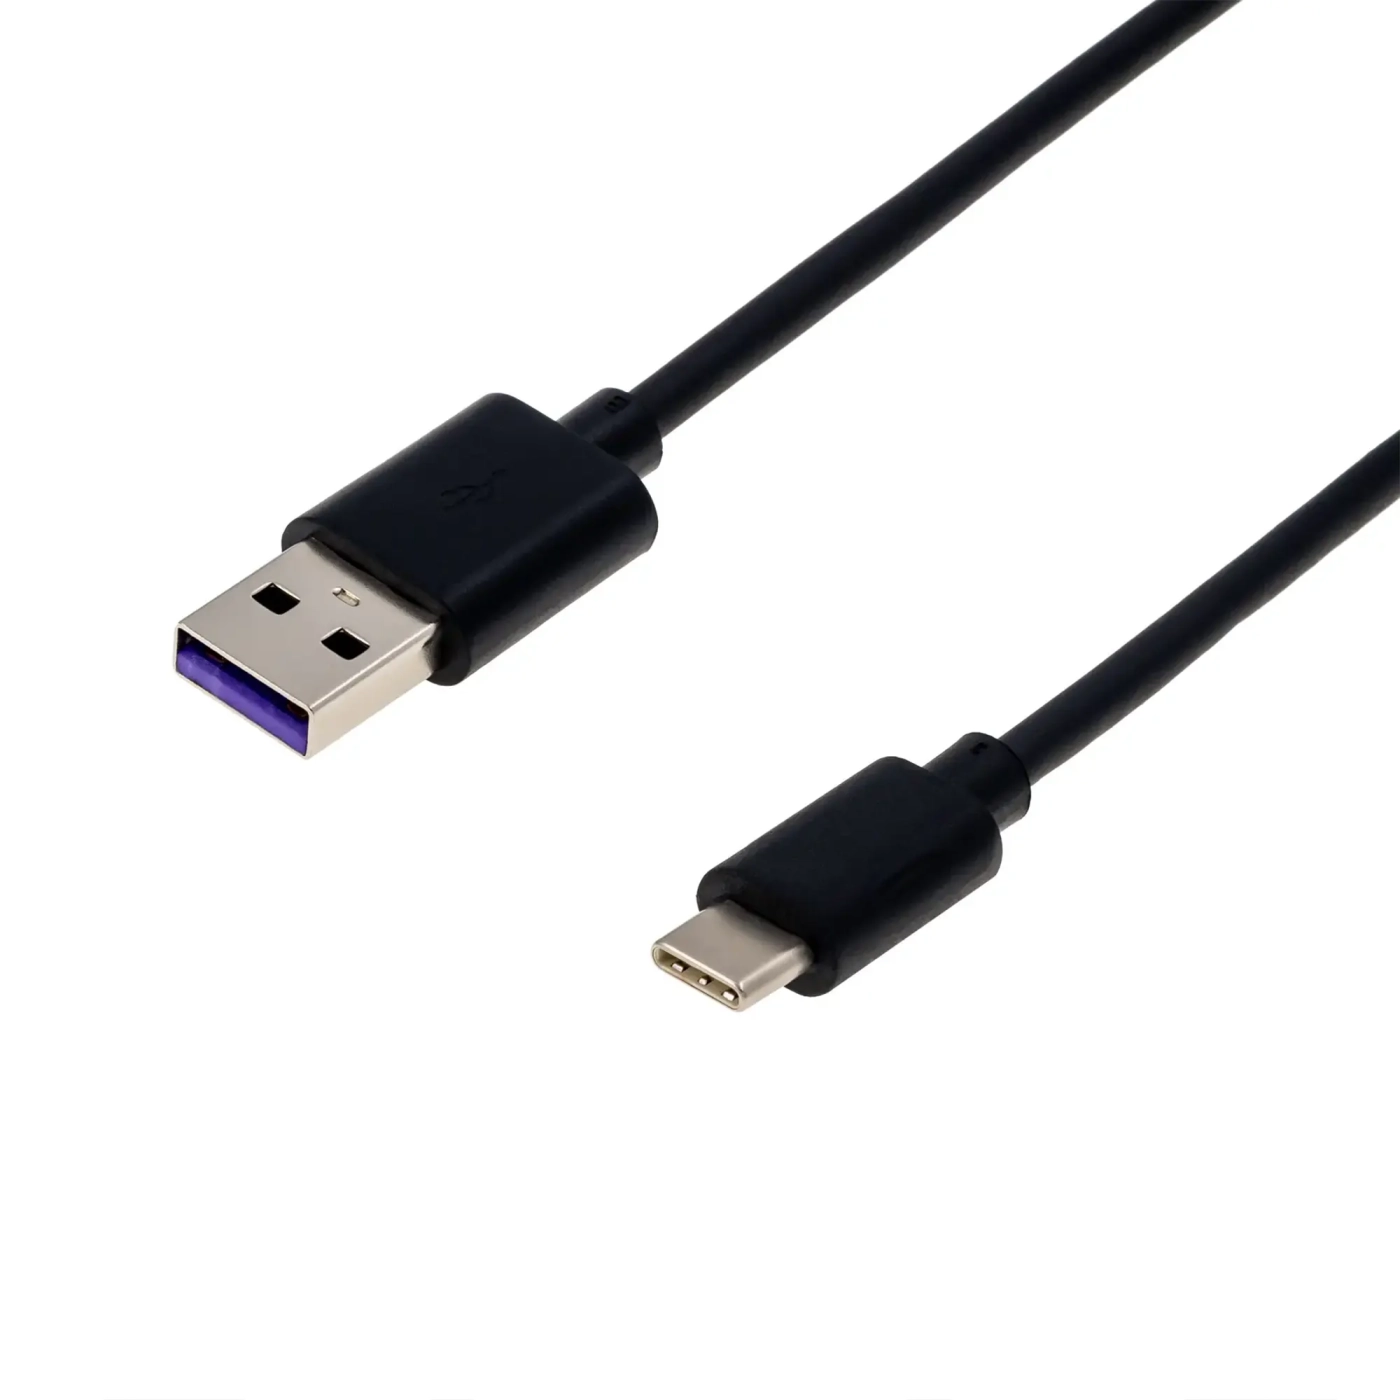 Купить Кабель Grand-X USB-TypeC 4A, 1m, Black. Открытая упаковка (TPC-01) - фото 2